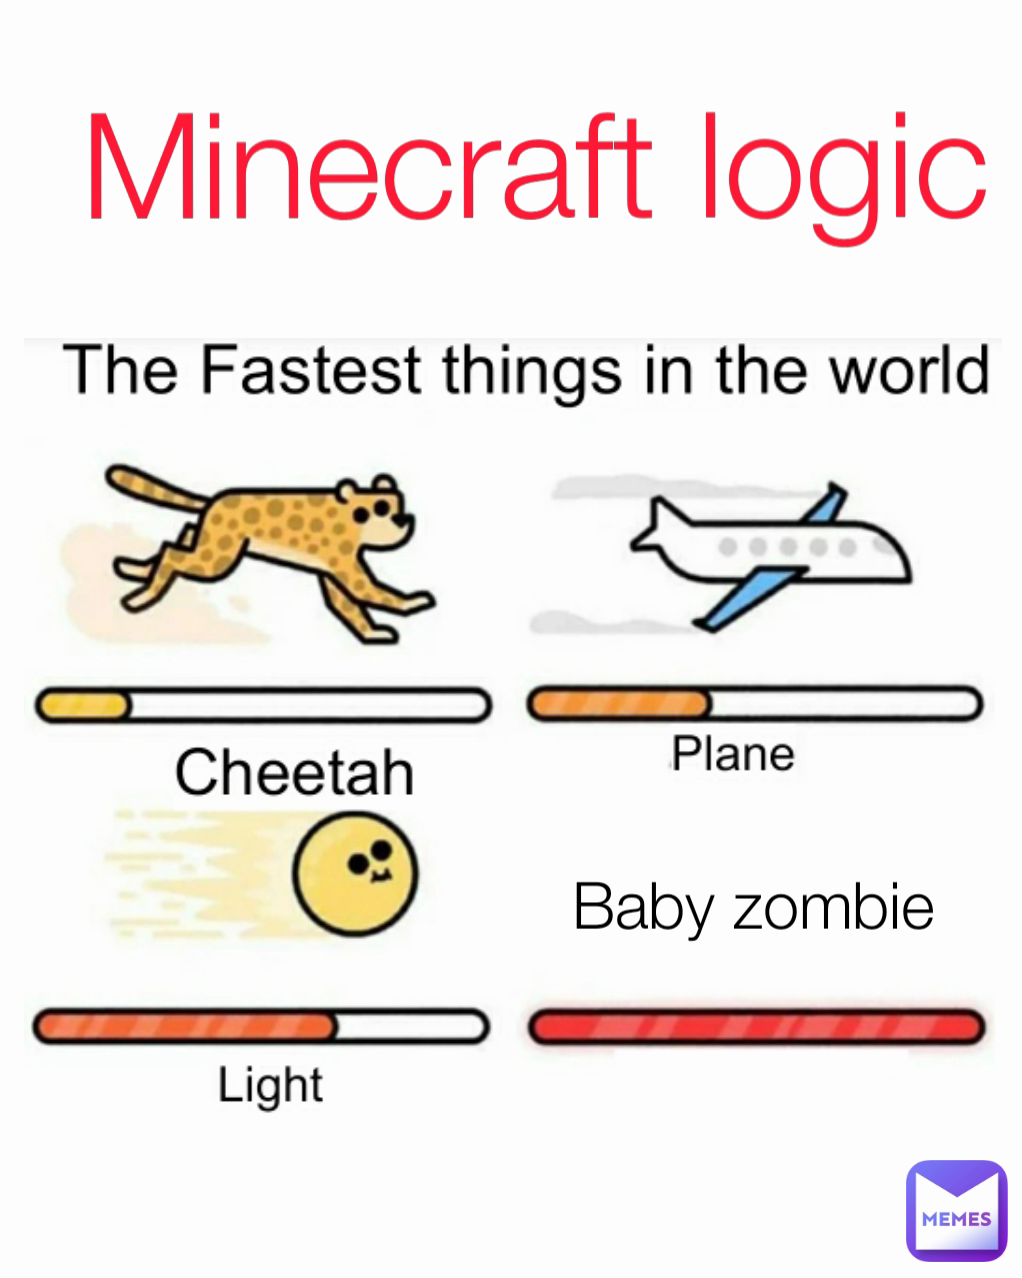 Baby zombie Minecraft logic